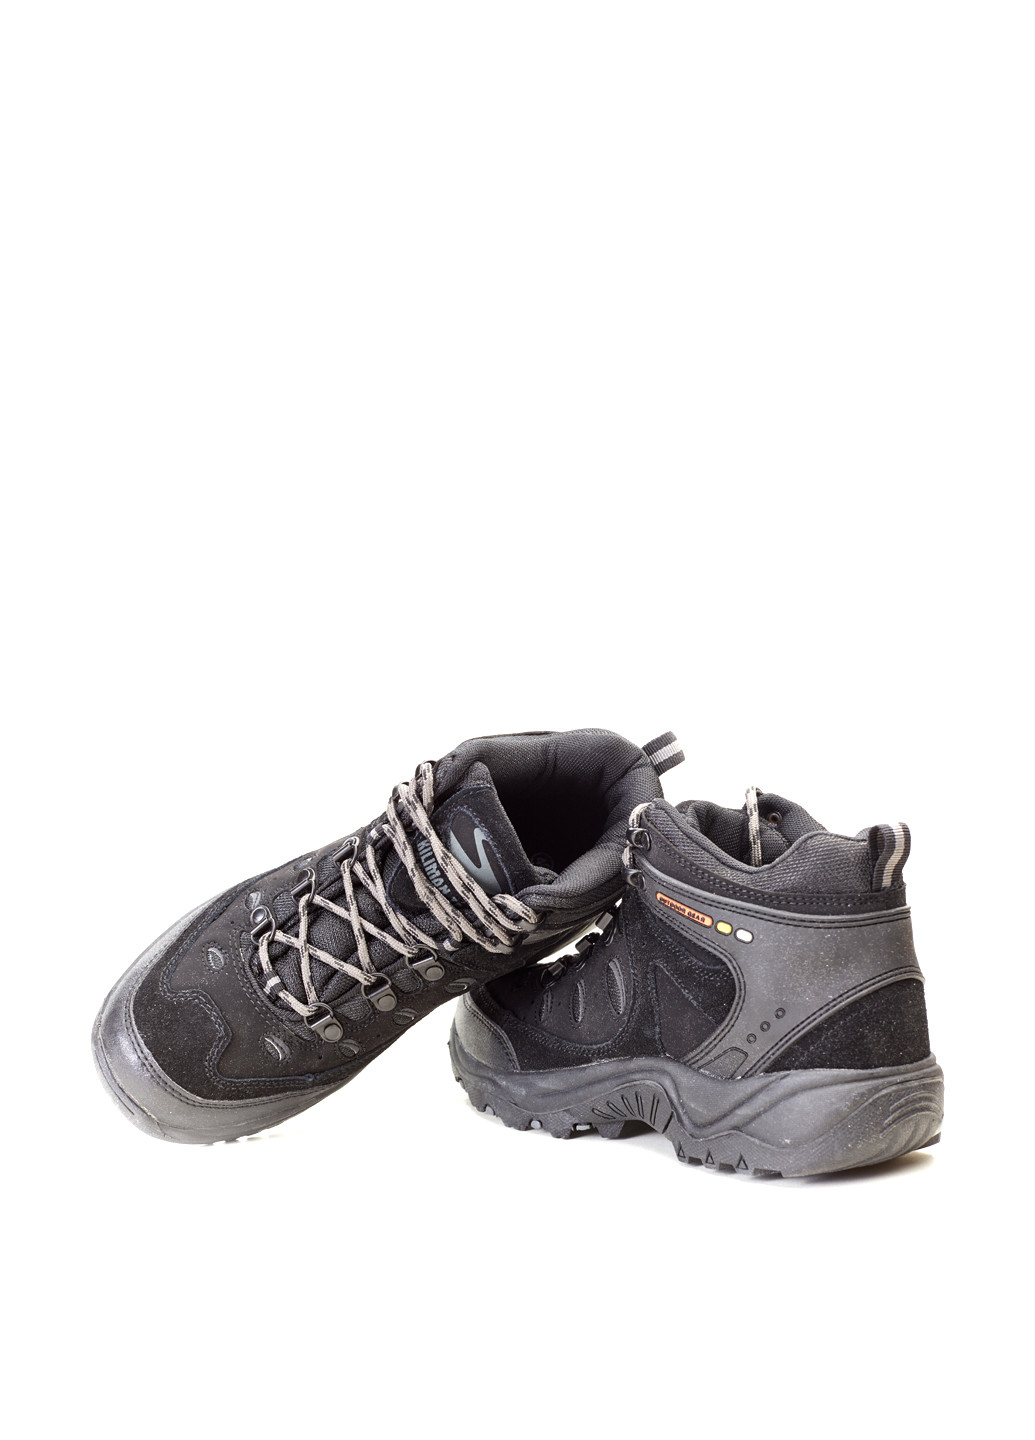 Черные осенние ботинки хайкеры Kiliman Trek